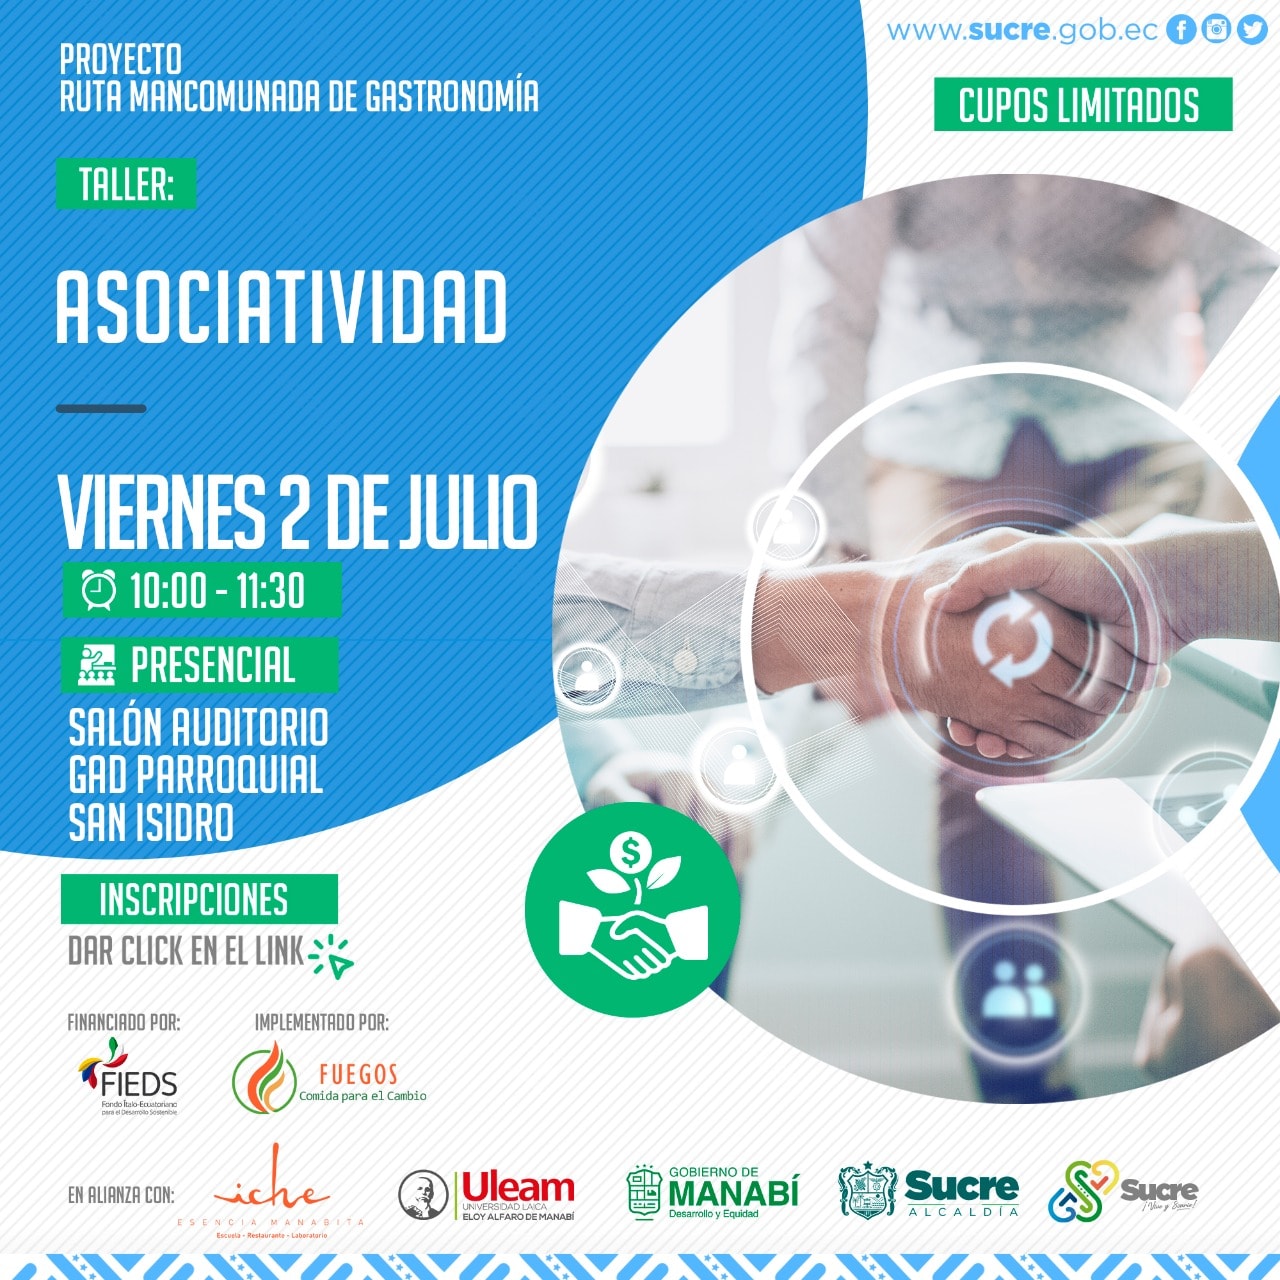 Este viernes 2 de julio en San Isidro, taller presencial sobre Asociatividad.